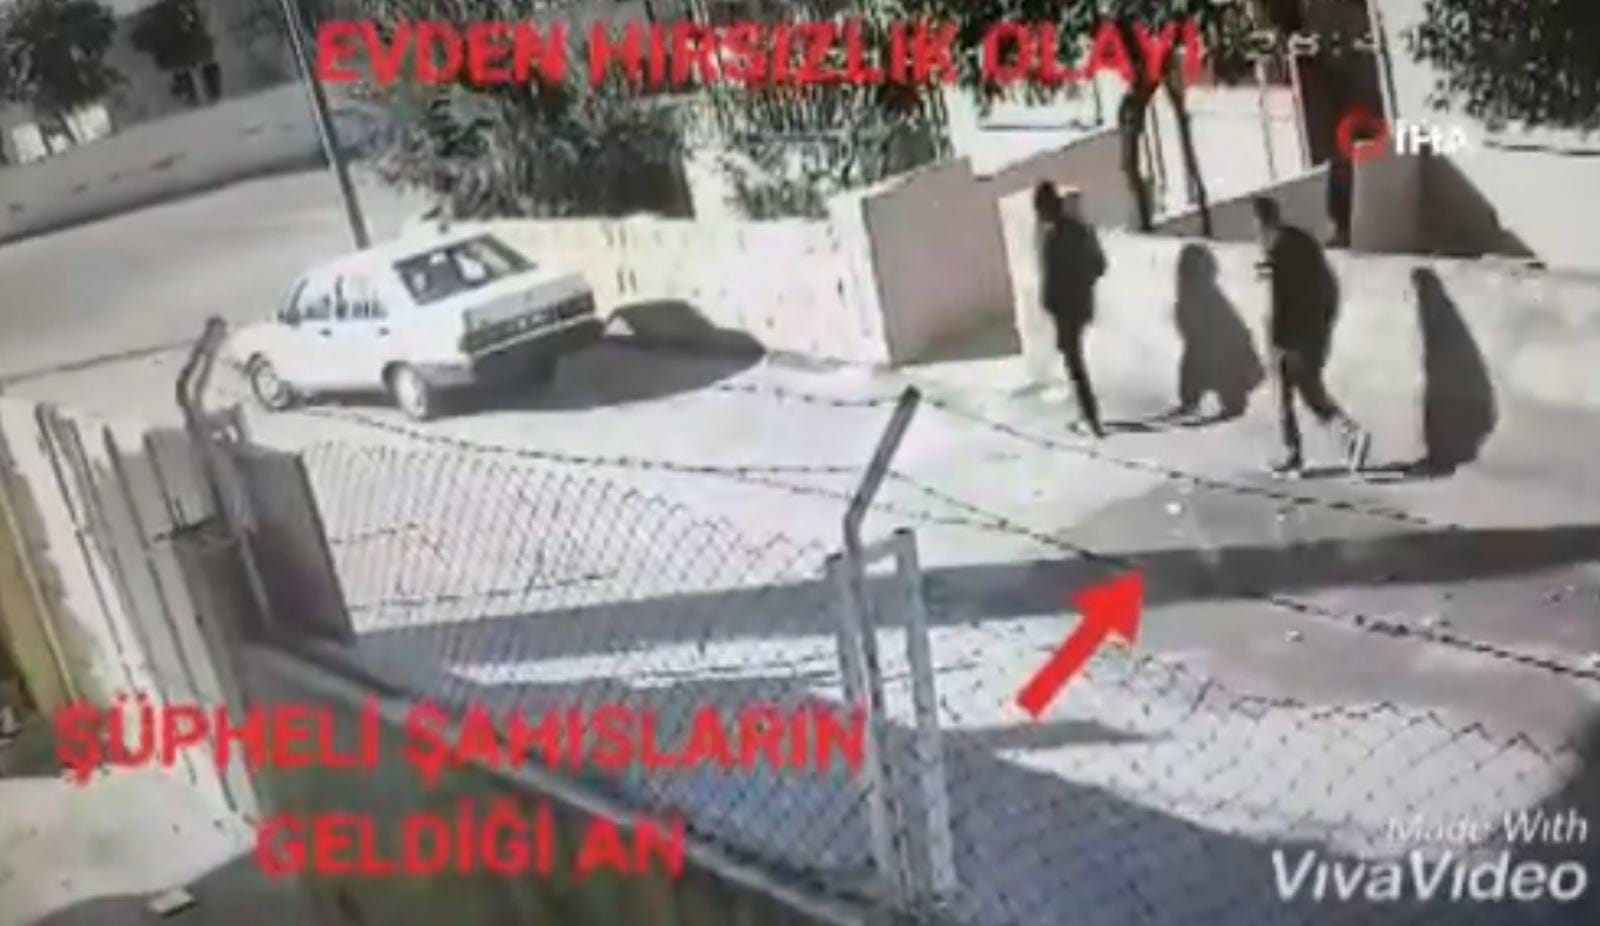 Gaziantep'te dikkat çeken hırsızlık: Ayçiçek yağı çaldılar